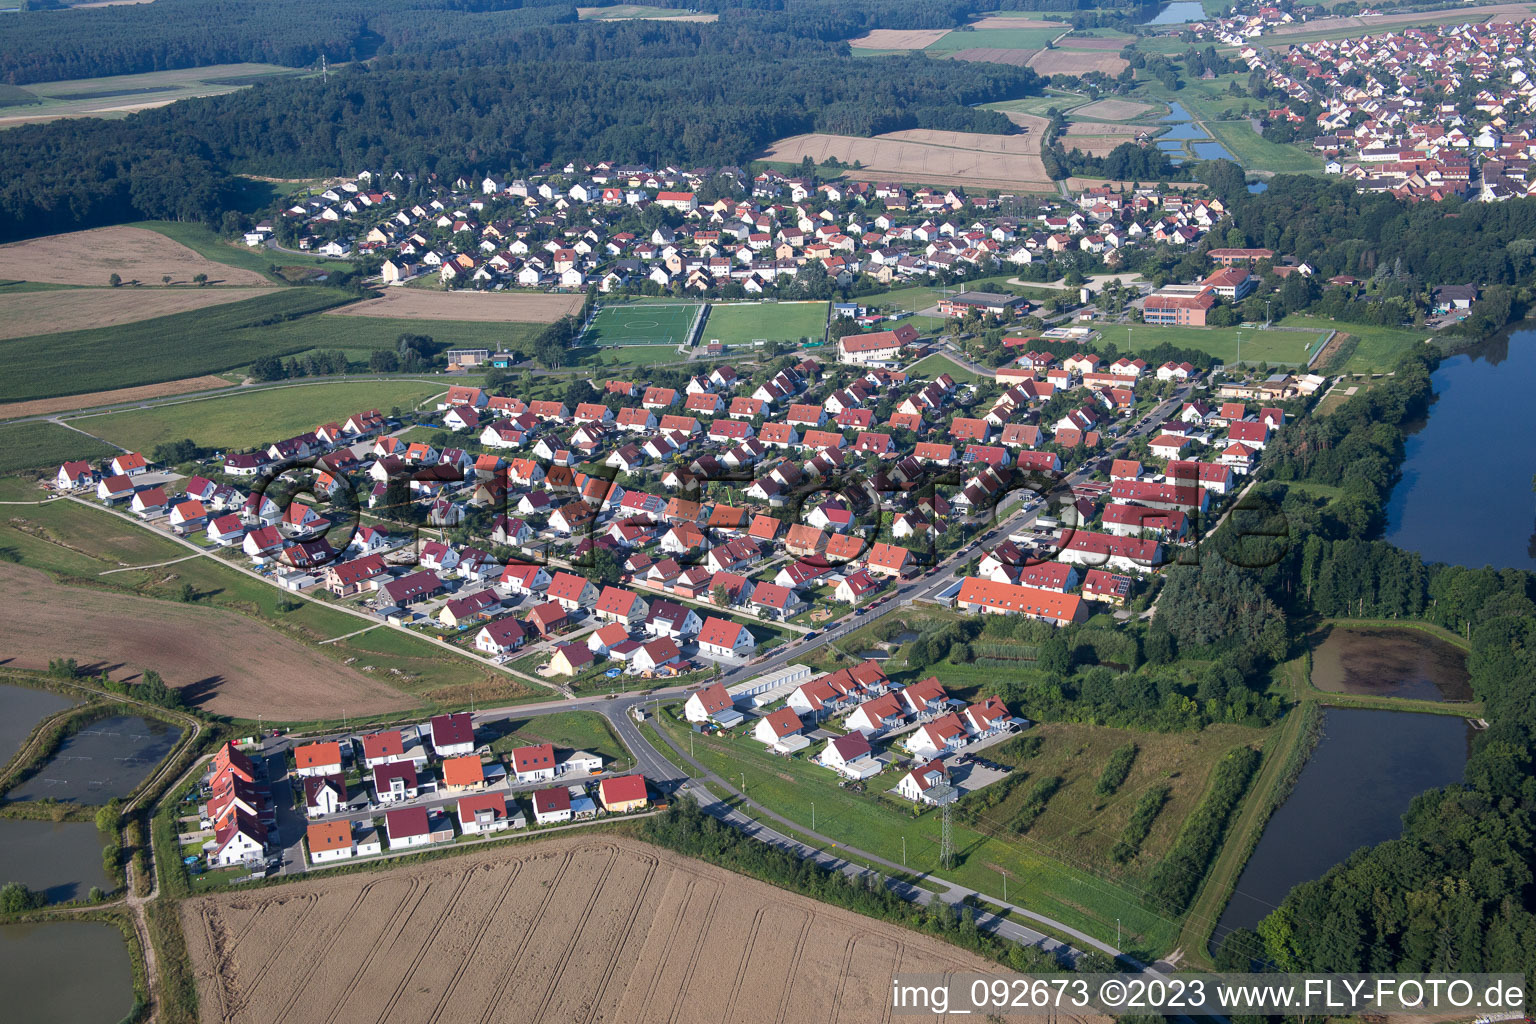 Luftbild von Weisendorf im Bundesland Bayern, Deutschland